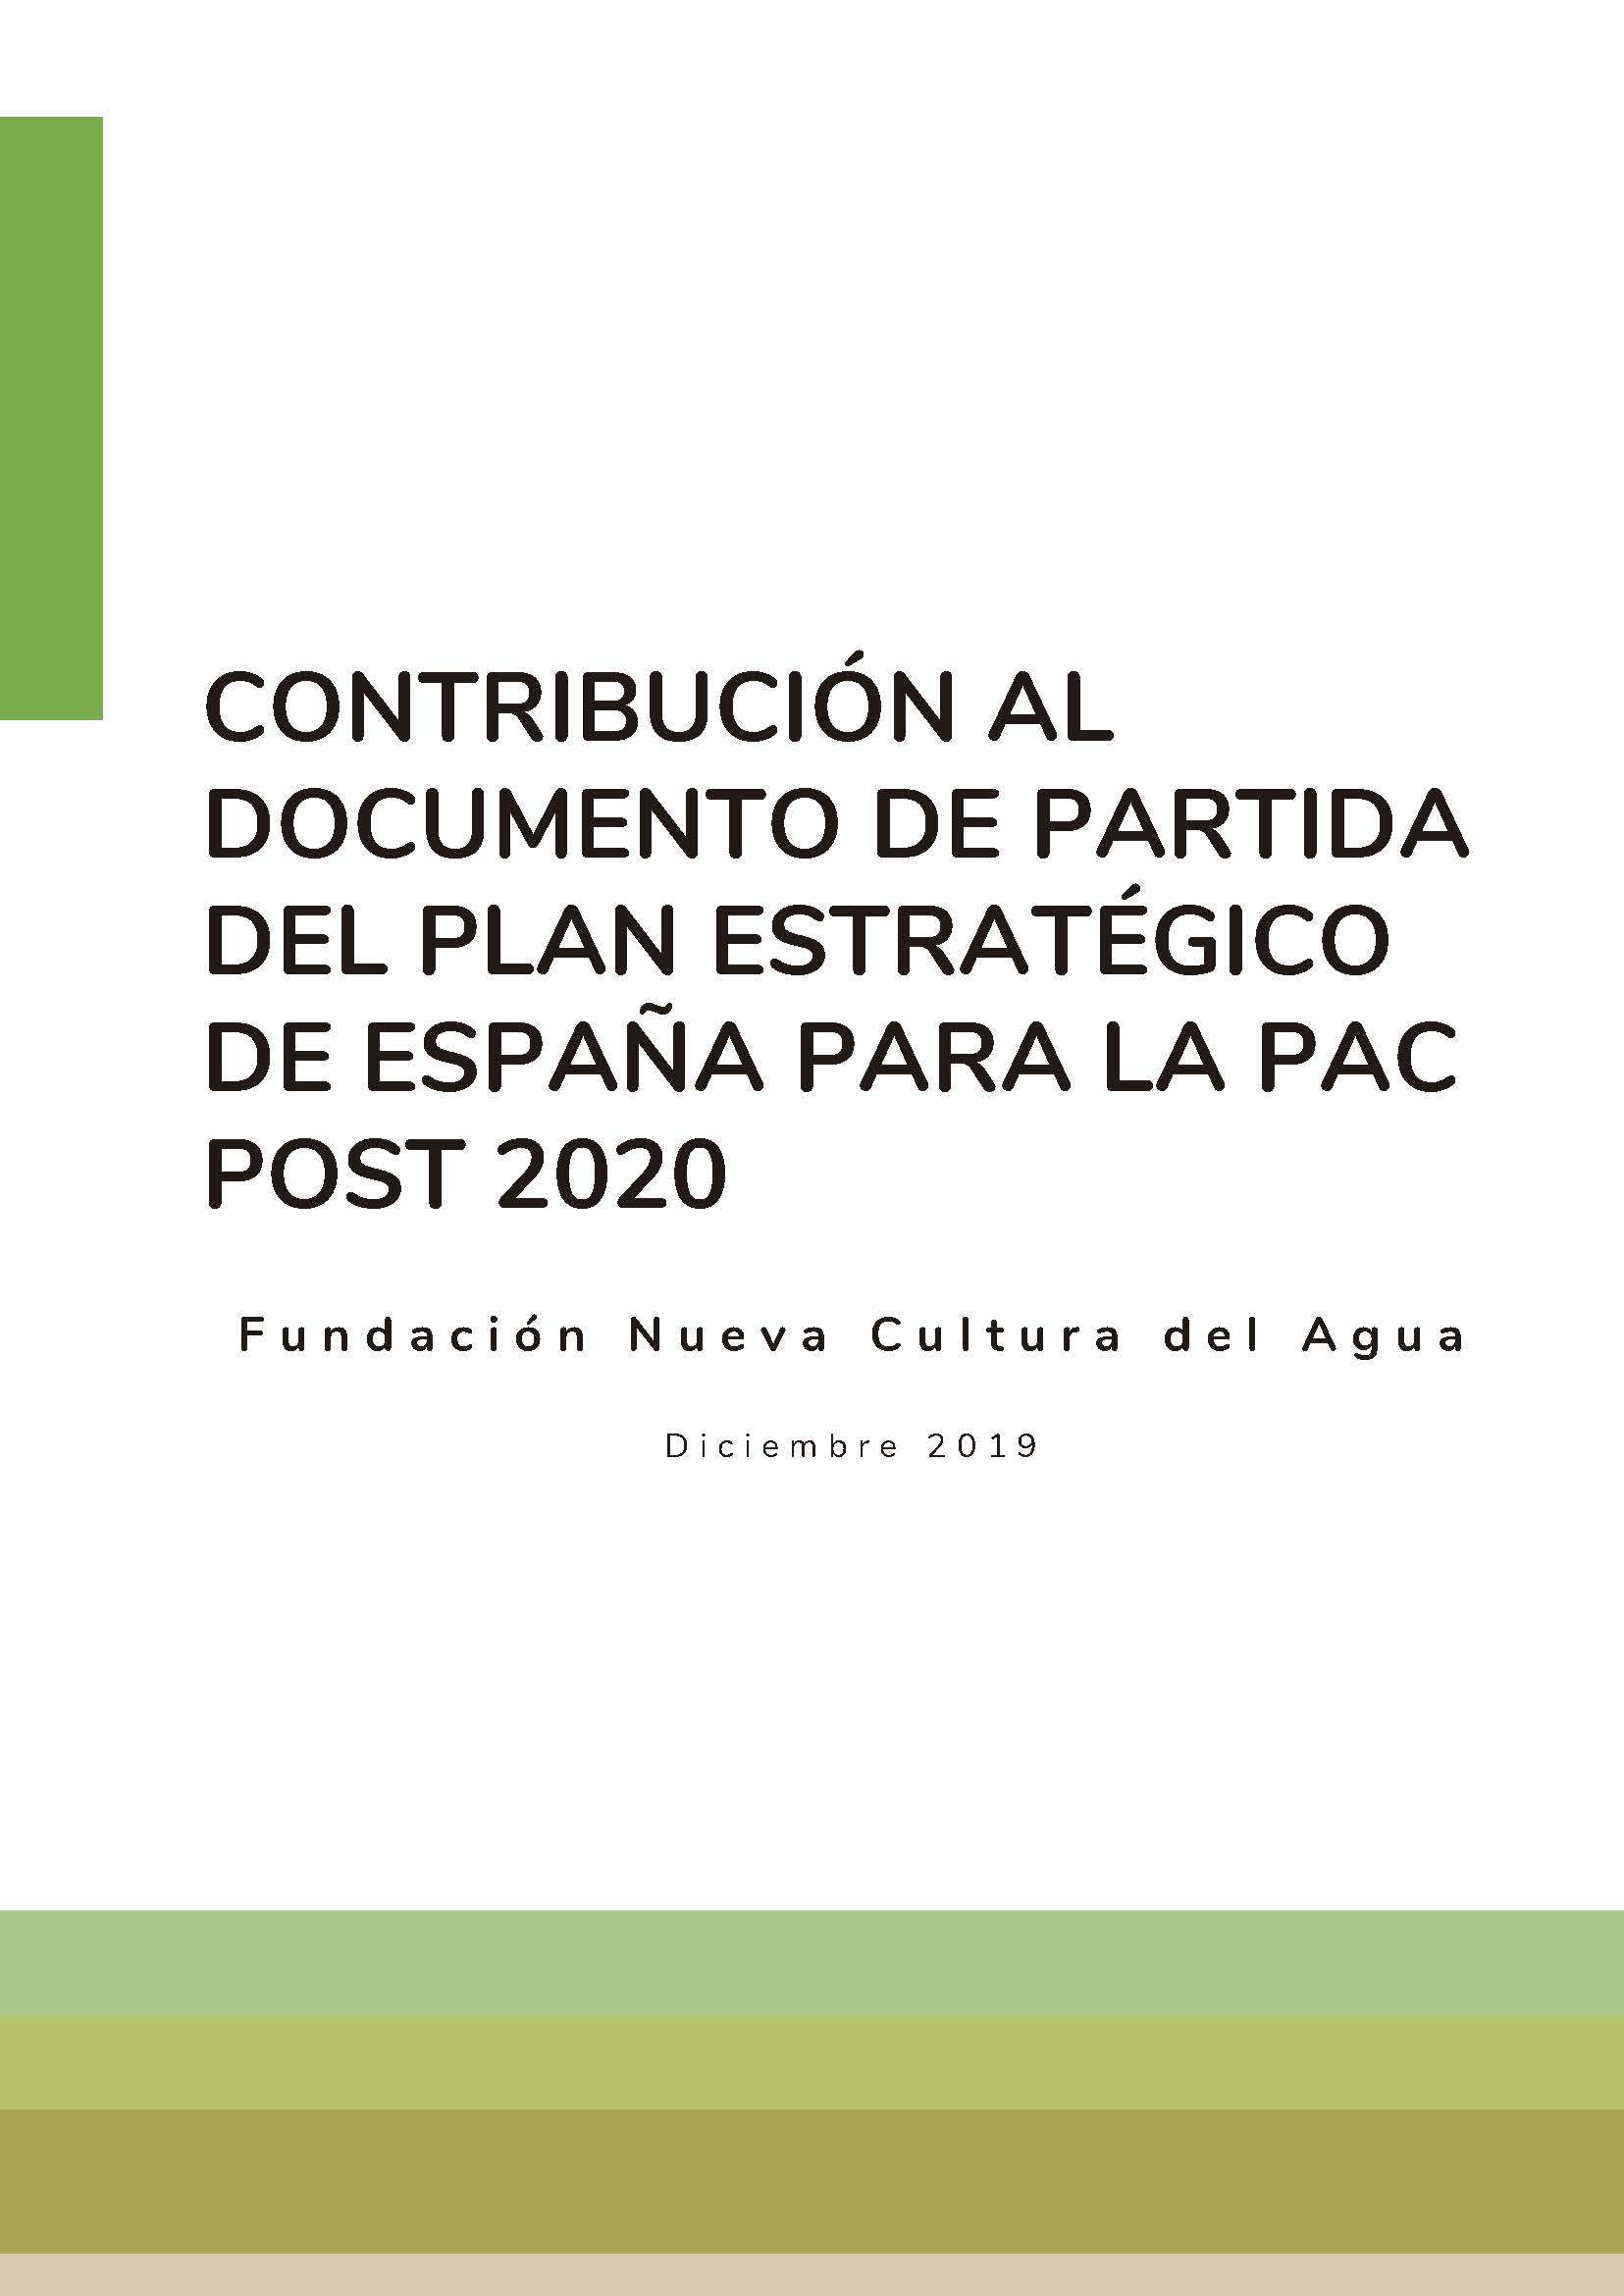 Contribución FNCA al documento de partida del plan estratégico de España para la PAC post 2020